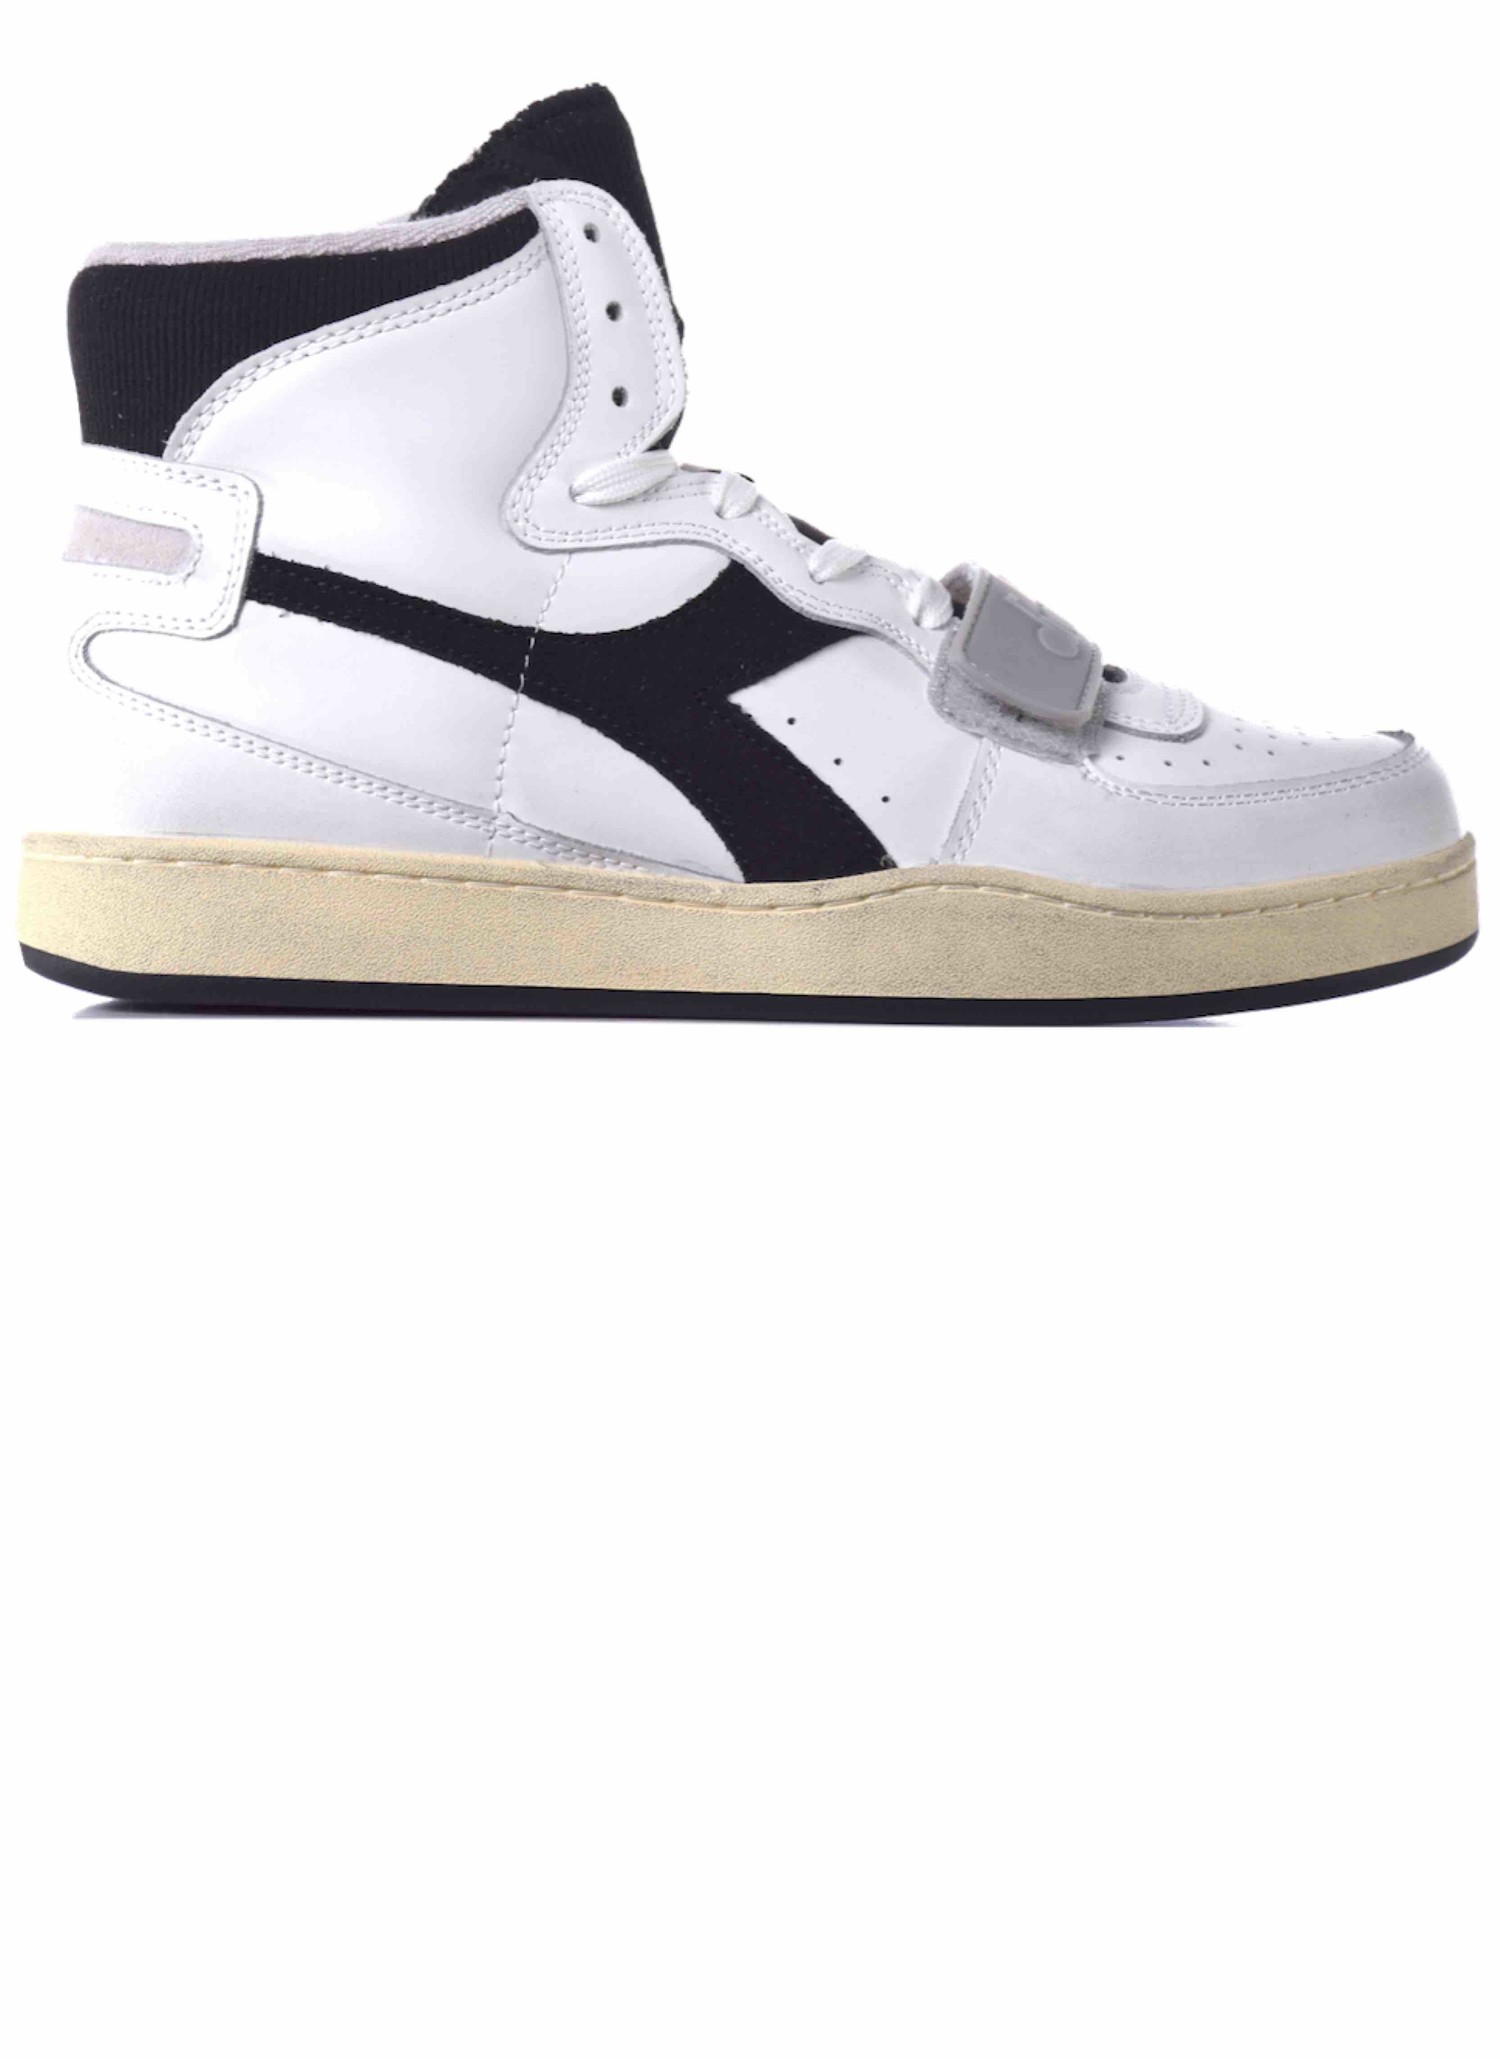 diadora sneakers white